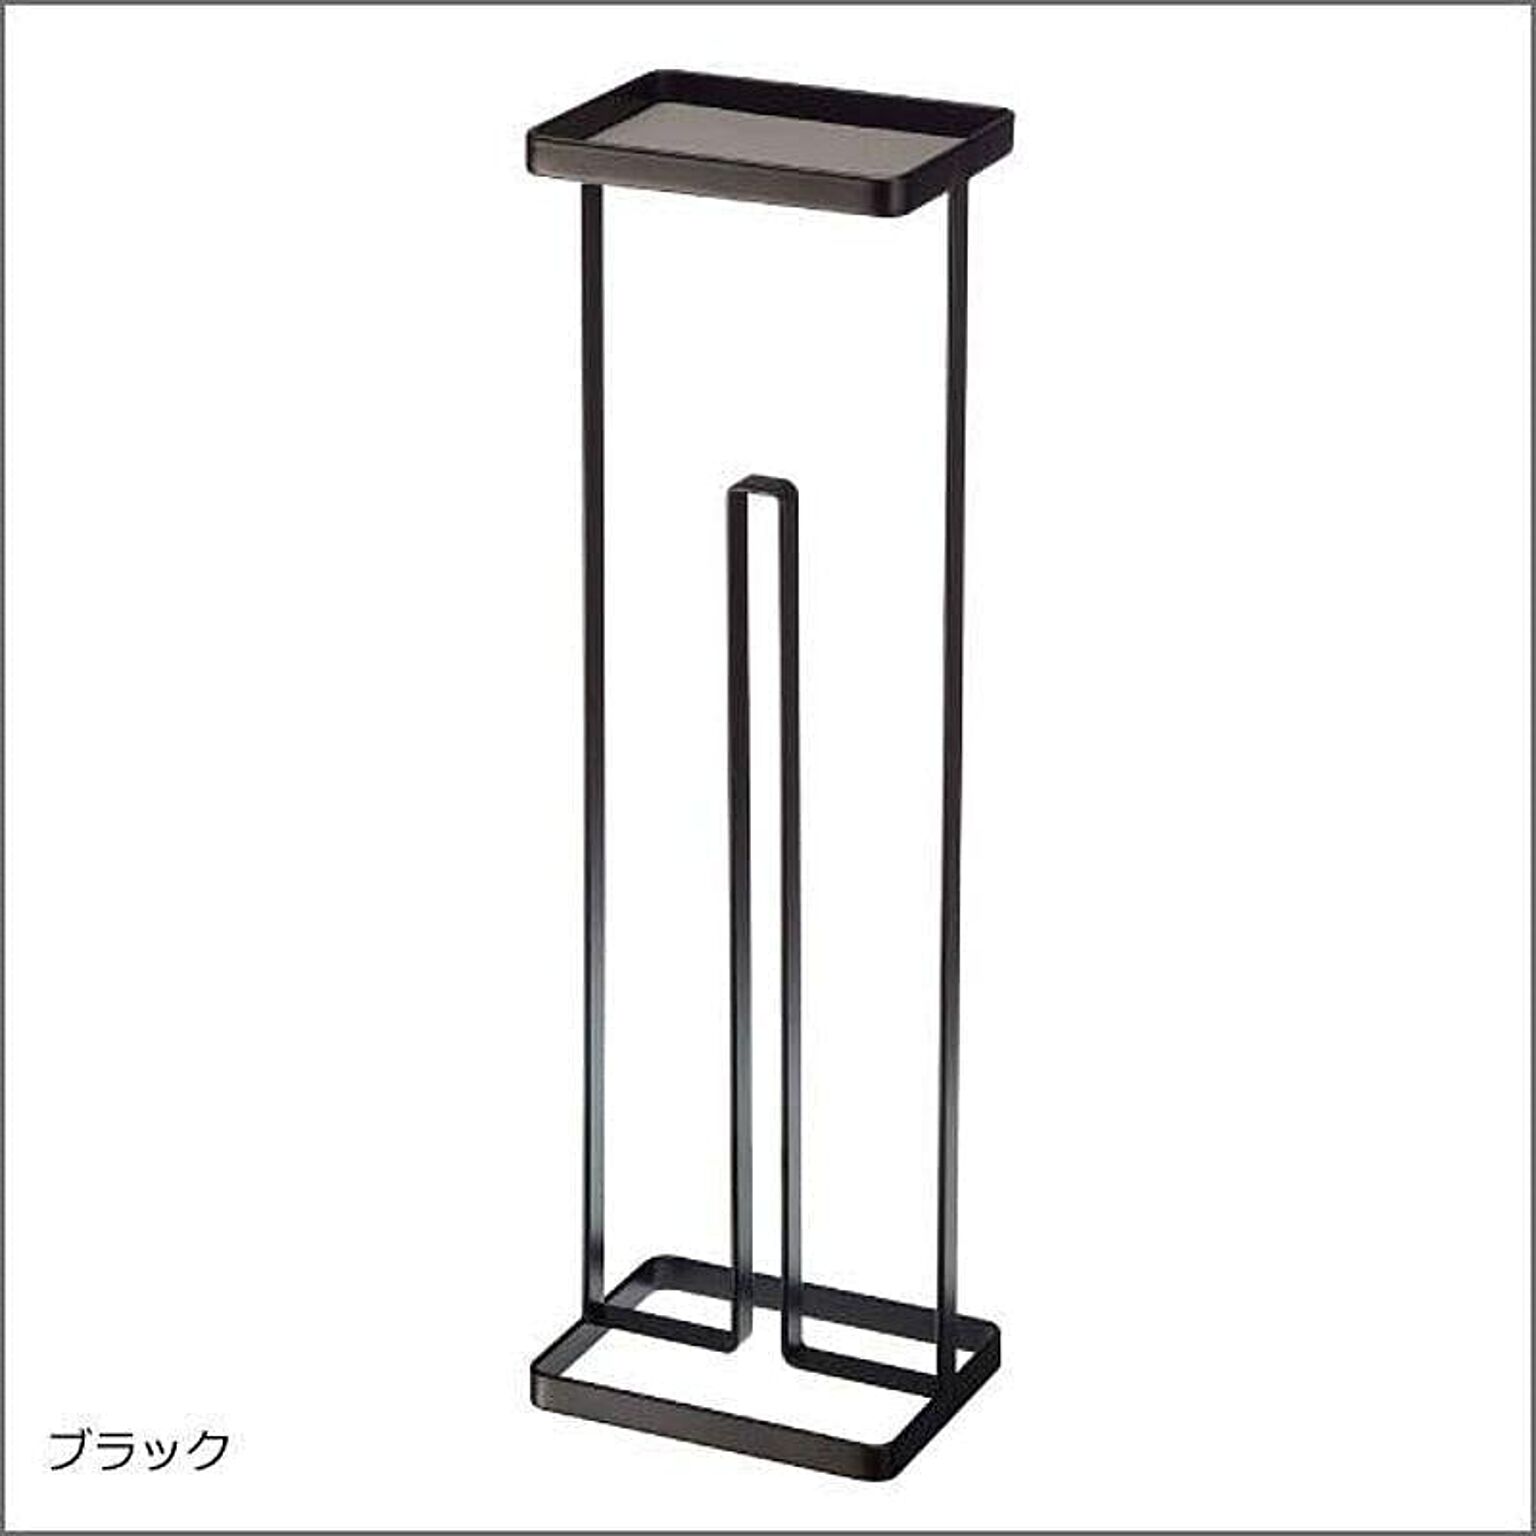 山崎実業 tower トレイ付きトイレットペーパースタンド ブラック